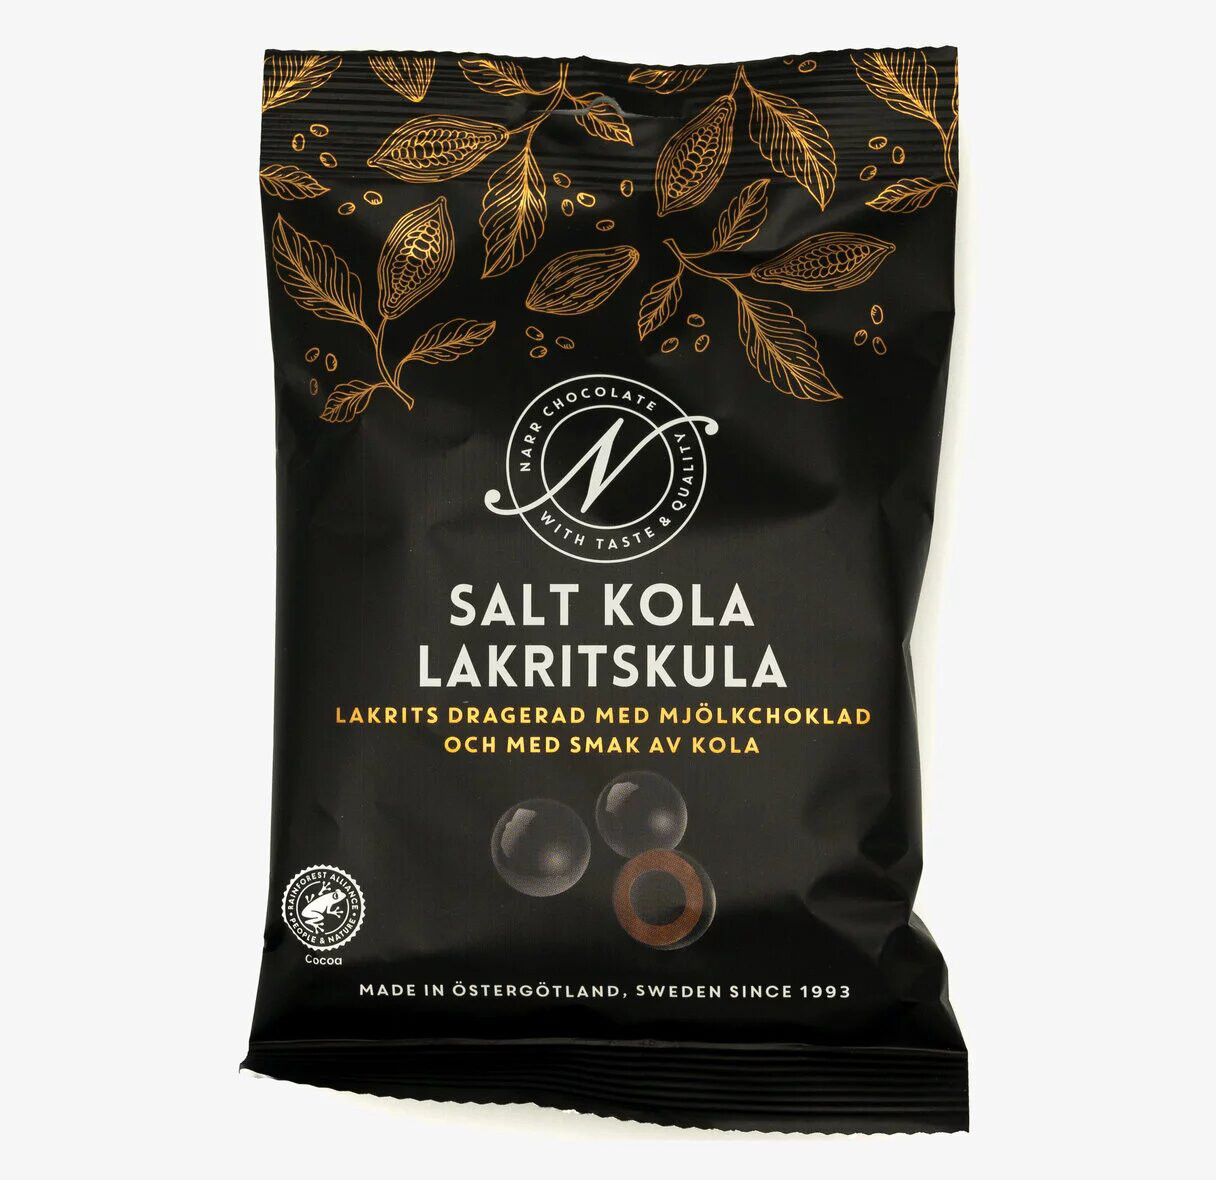 Narr Chocolate – Salt Kola Lakritskula 120g